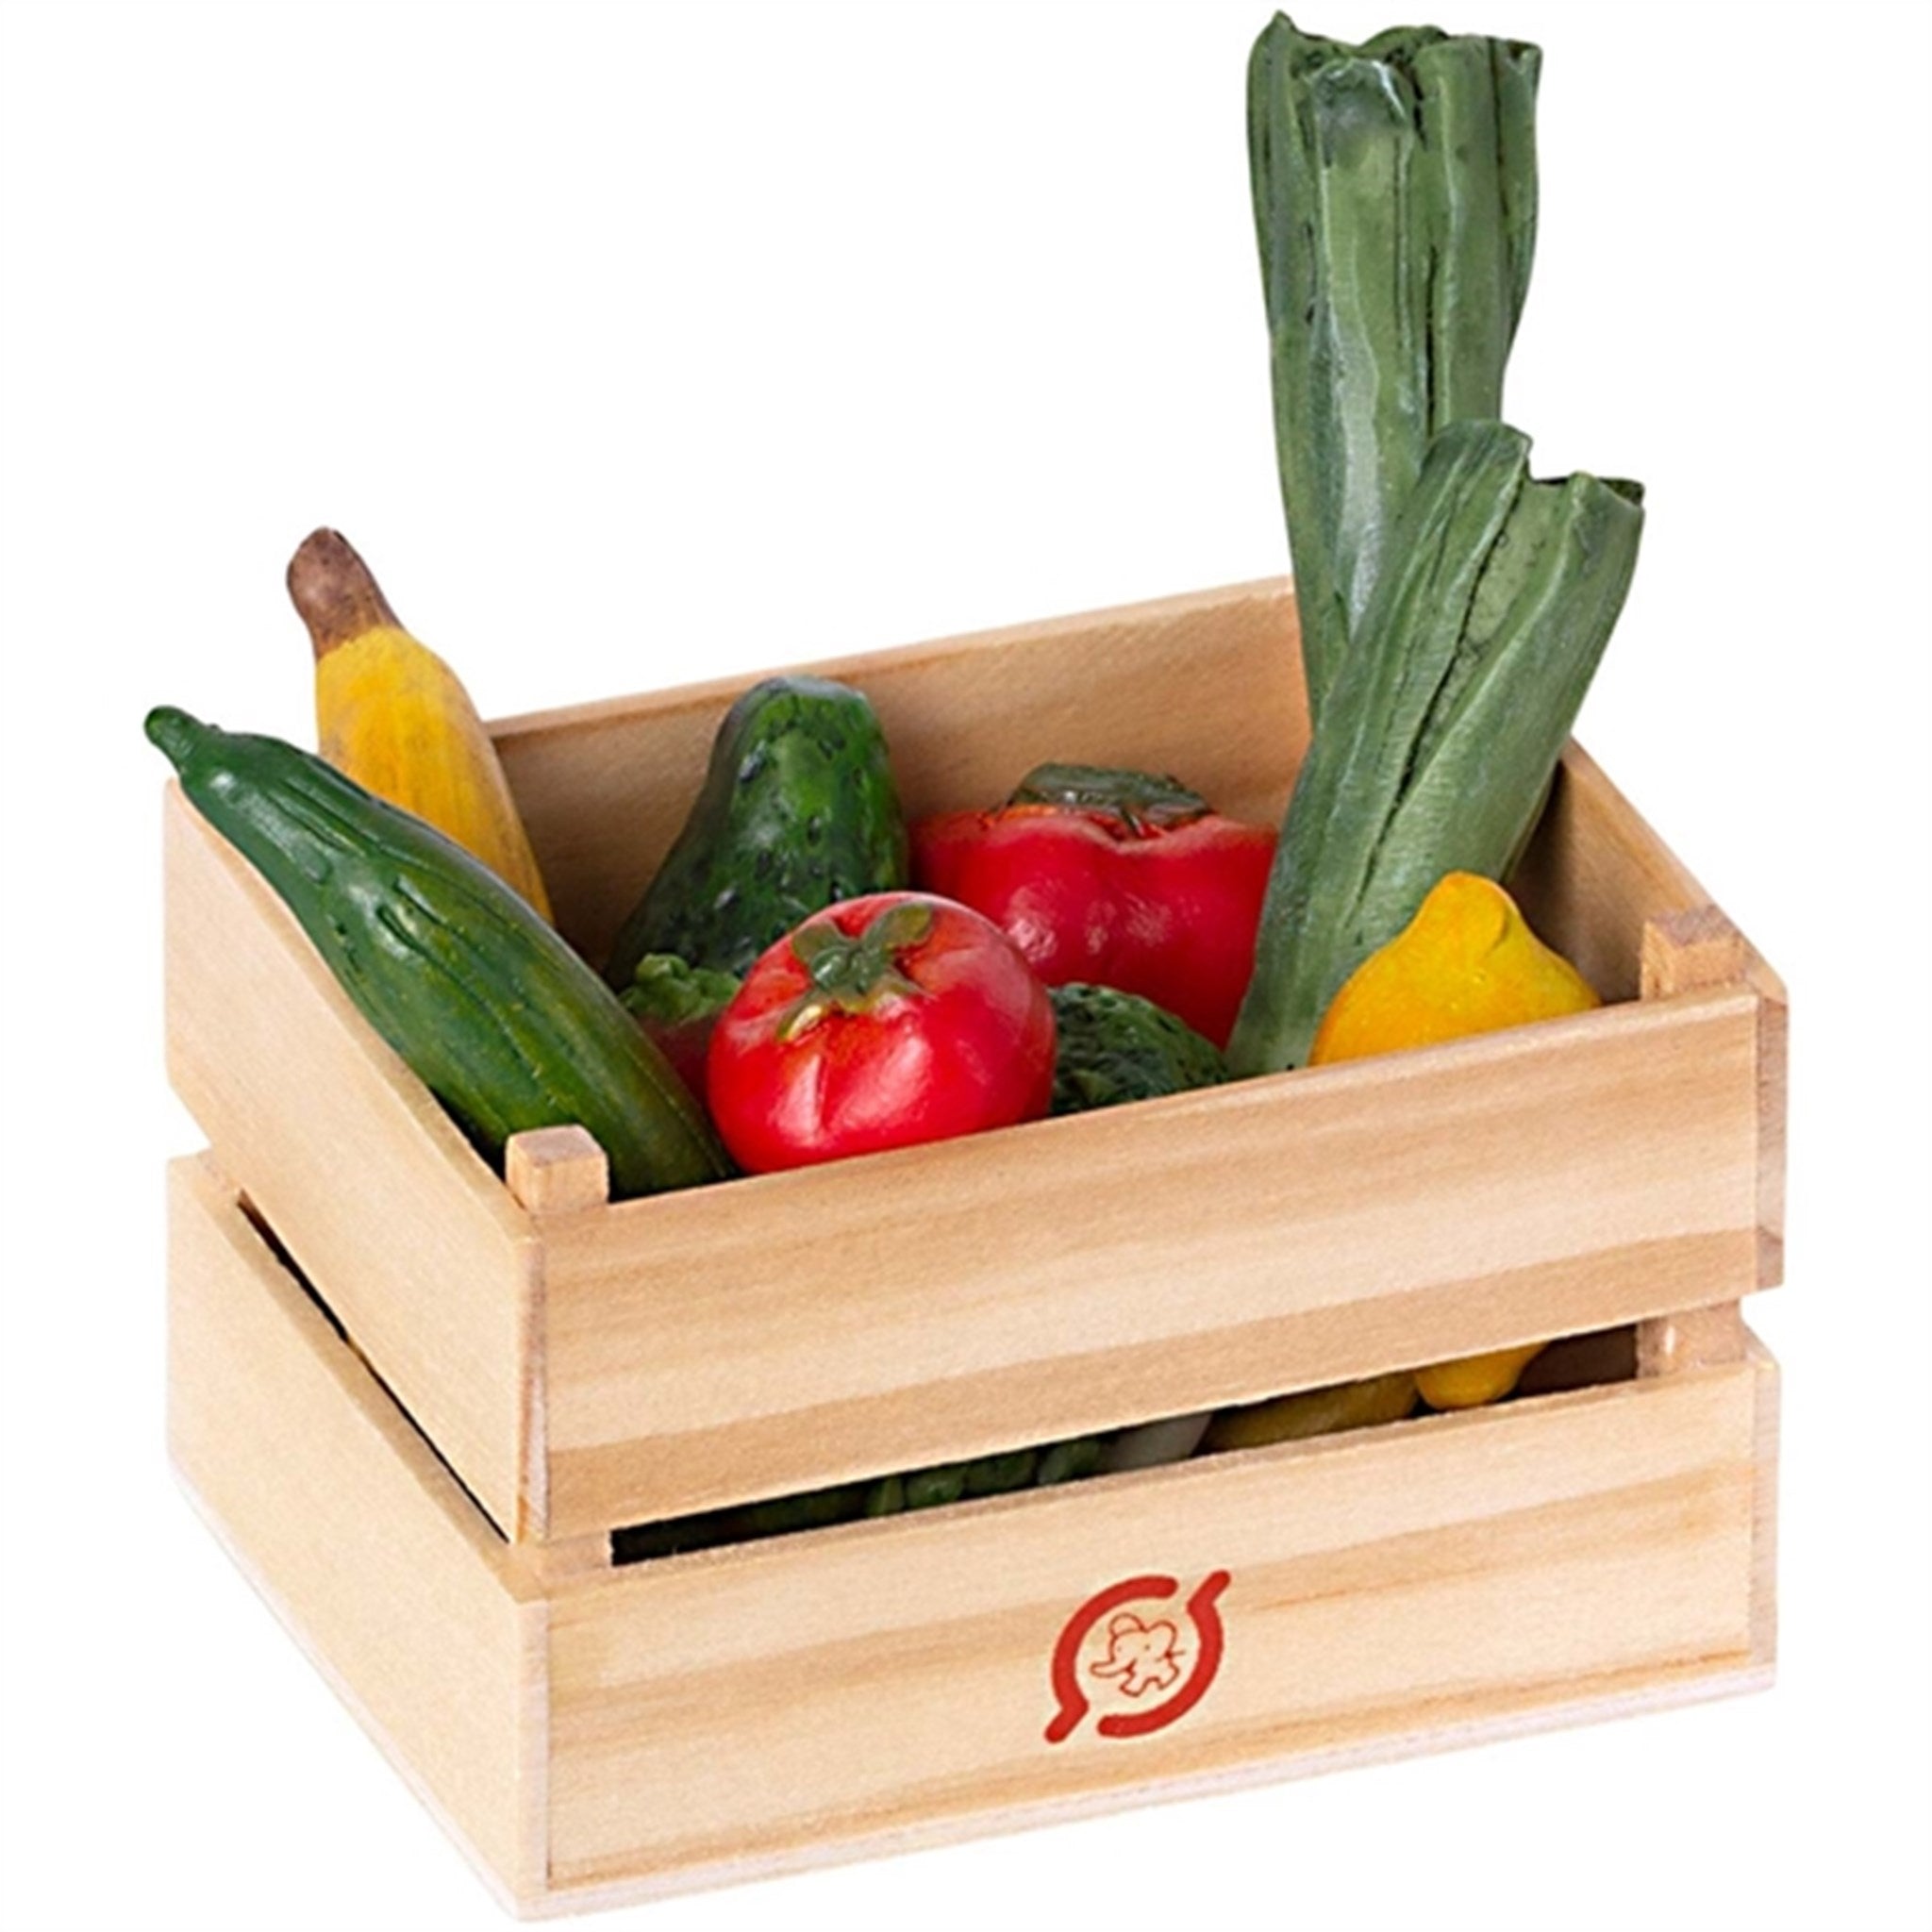 Maileg Veggies And Fruits Box